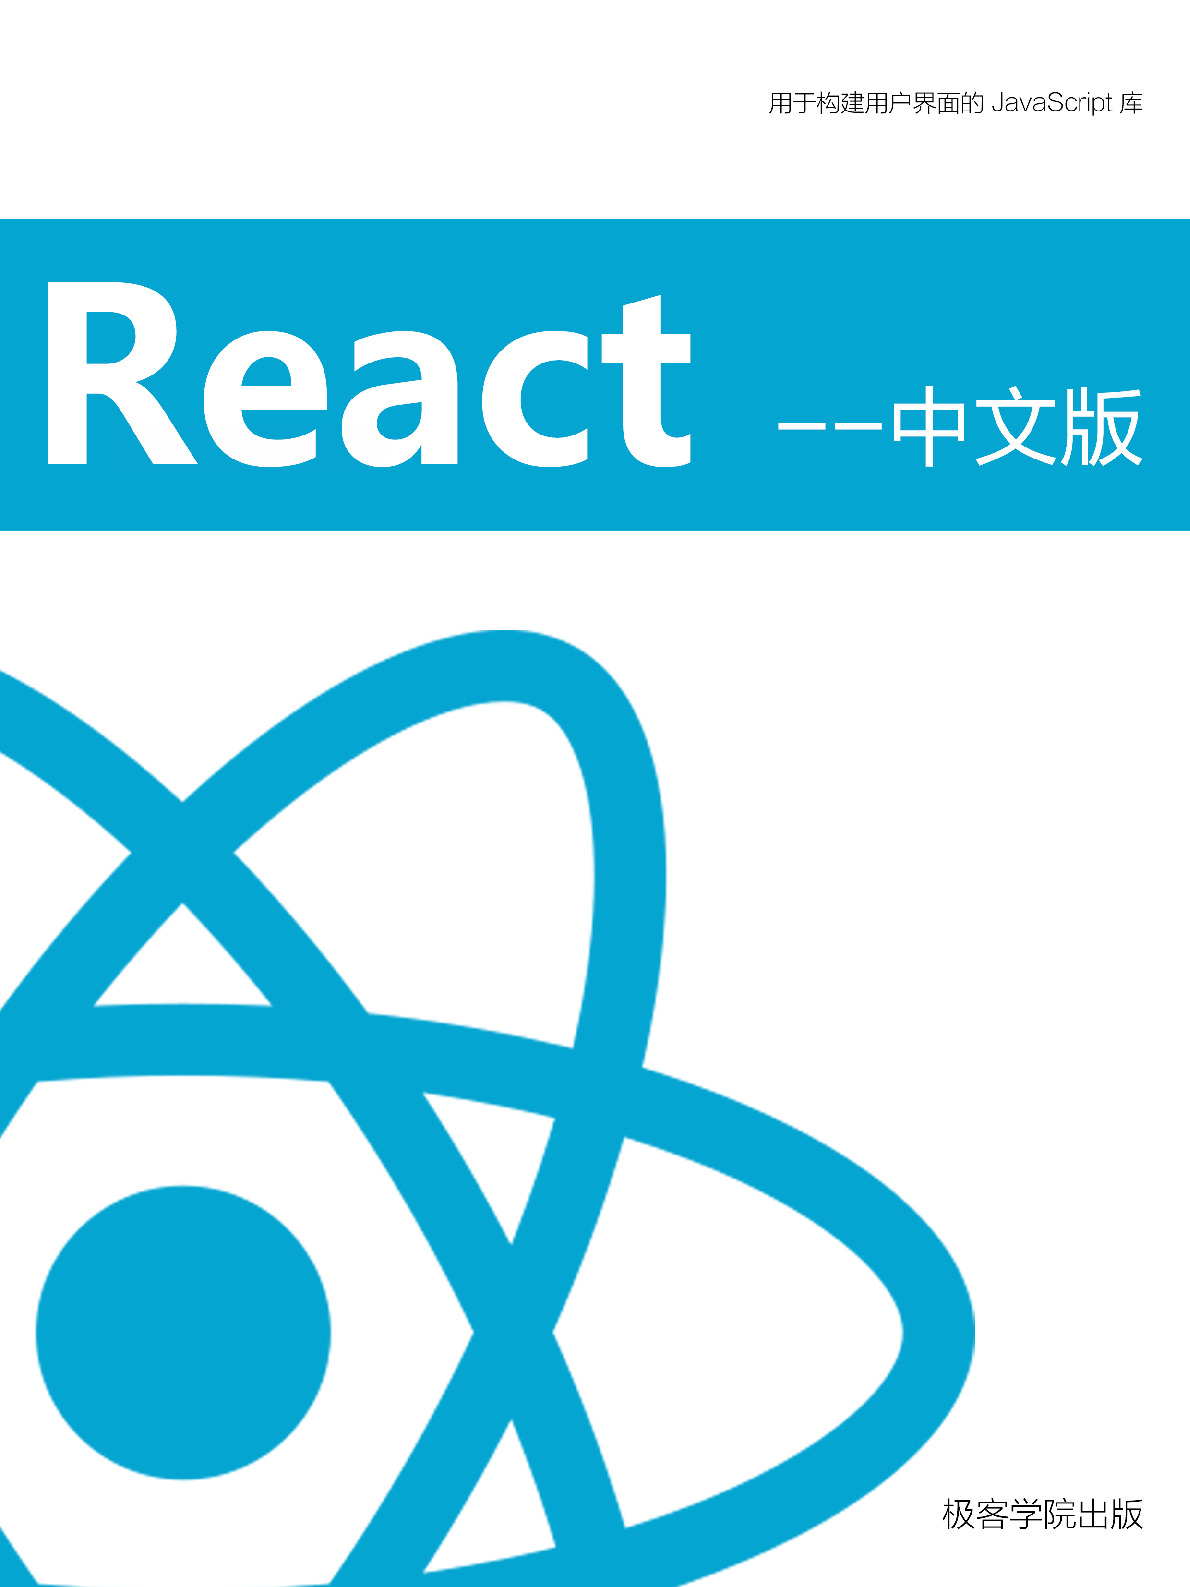 React 中文版 – v1.1